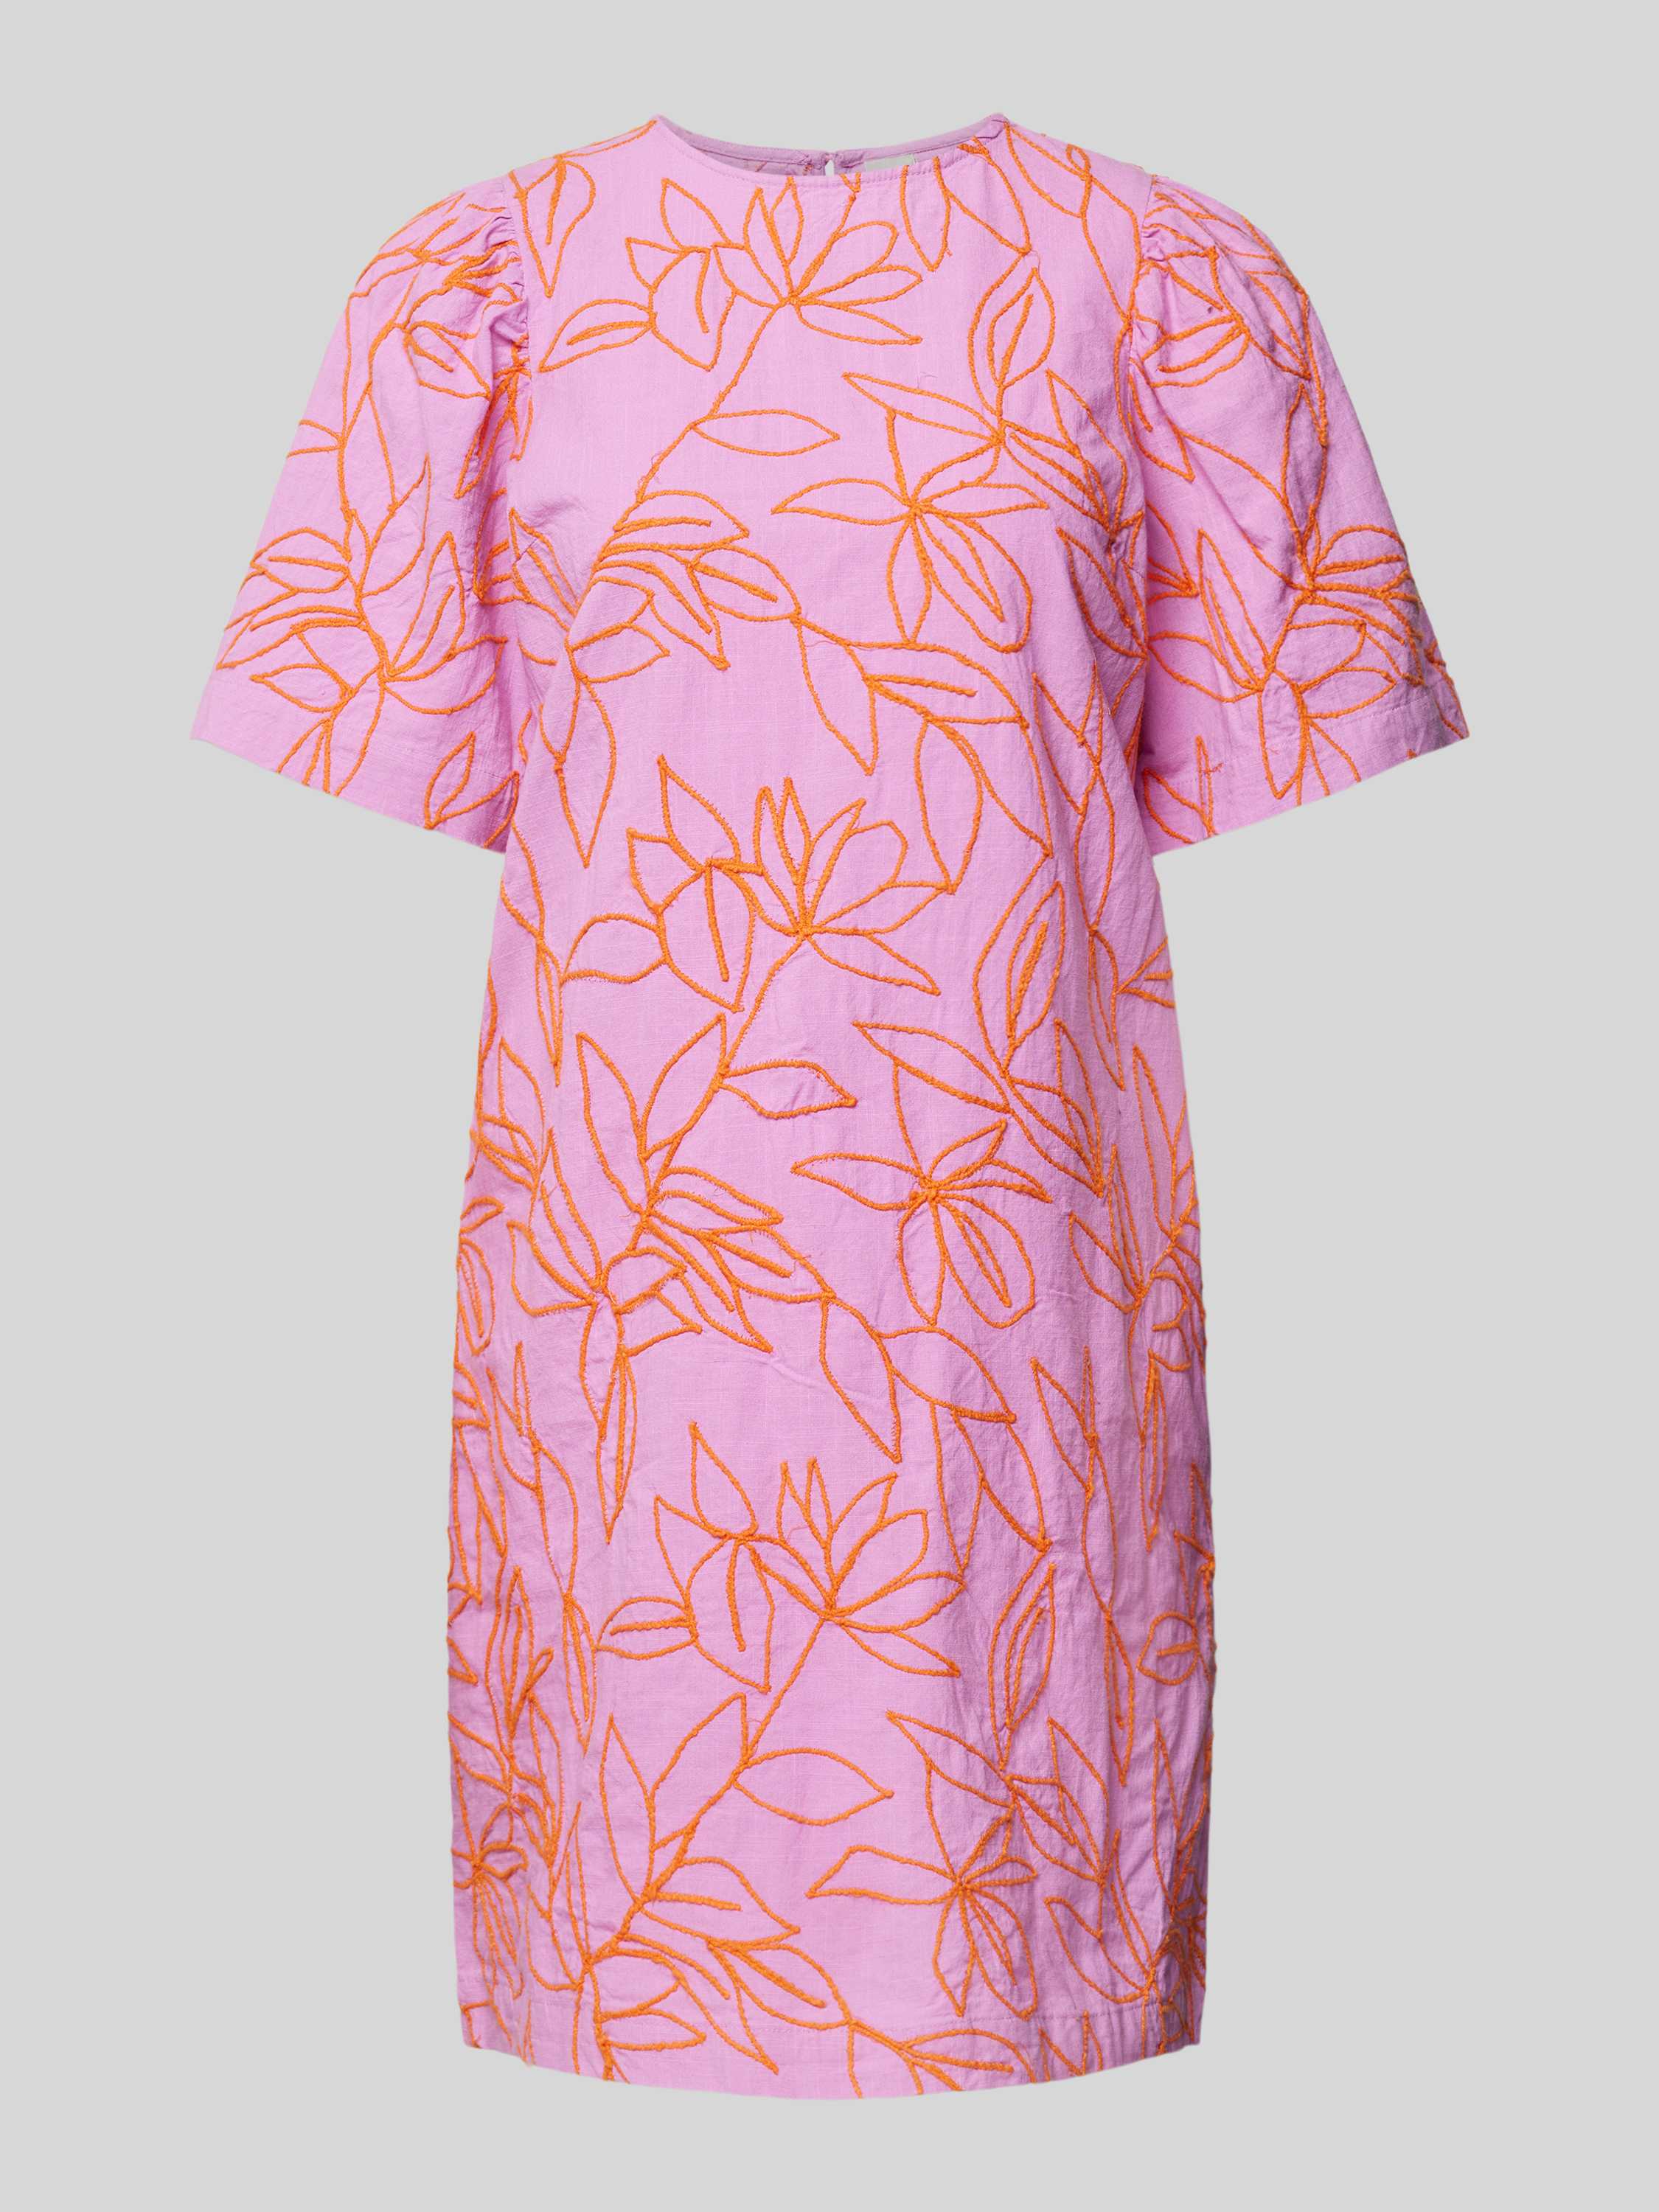 Y.A.S jurk YASCONEA met all over print en borduursels roze lila oranje